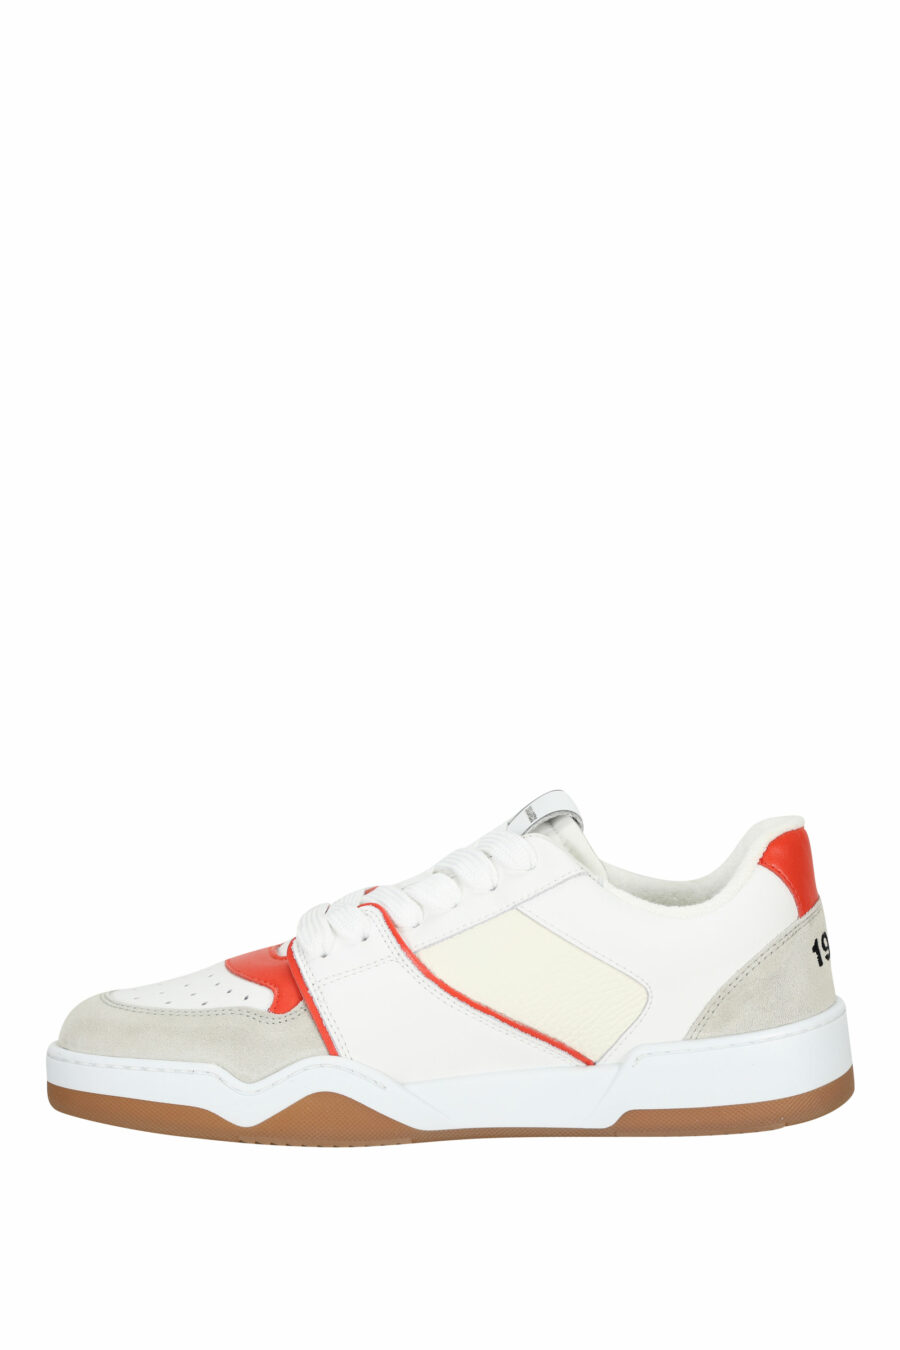 Zapatillas blancas "spyker" con rojo y gris - 8055777301814 2